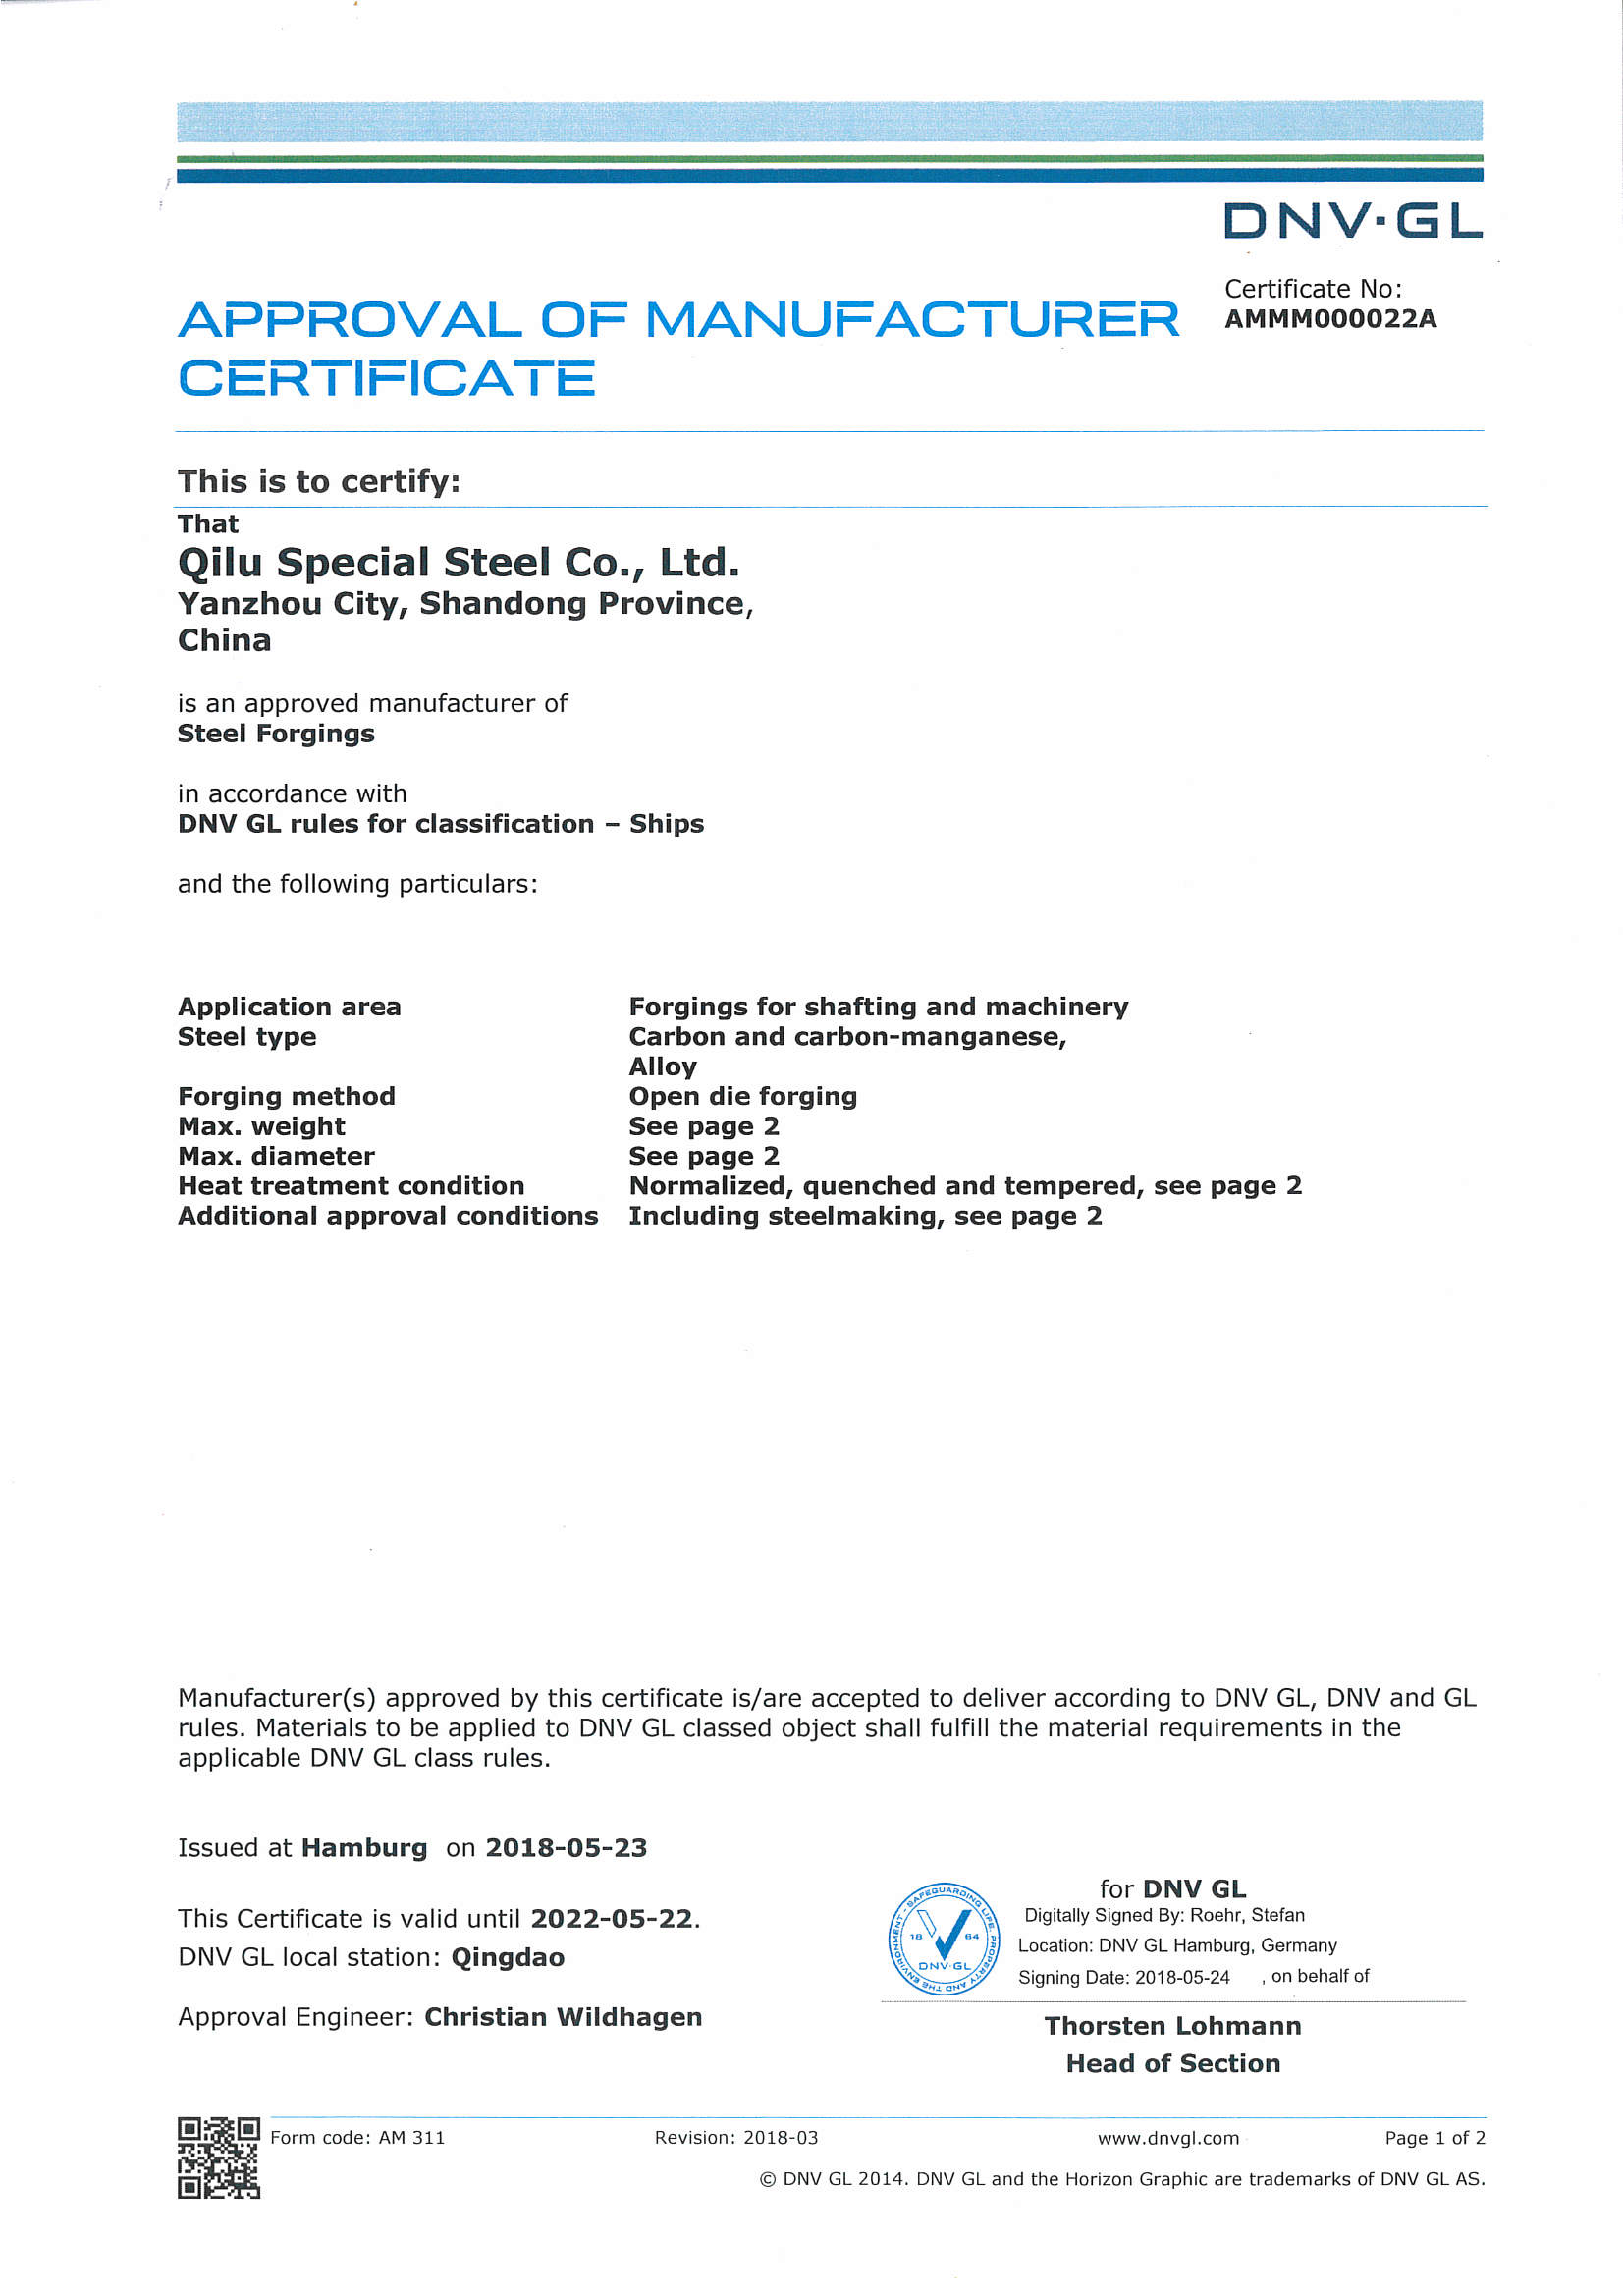 德国船级社DNV.GL工厂认证证书